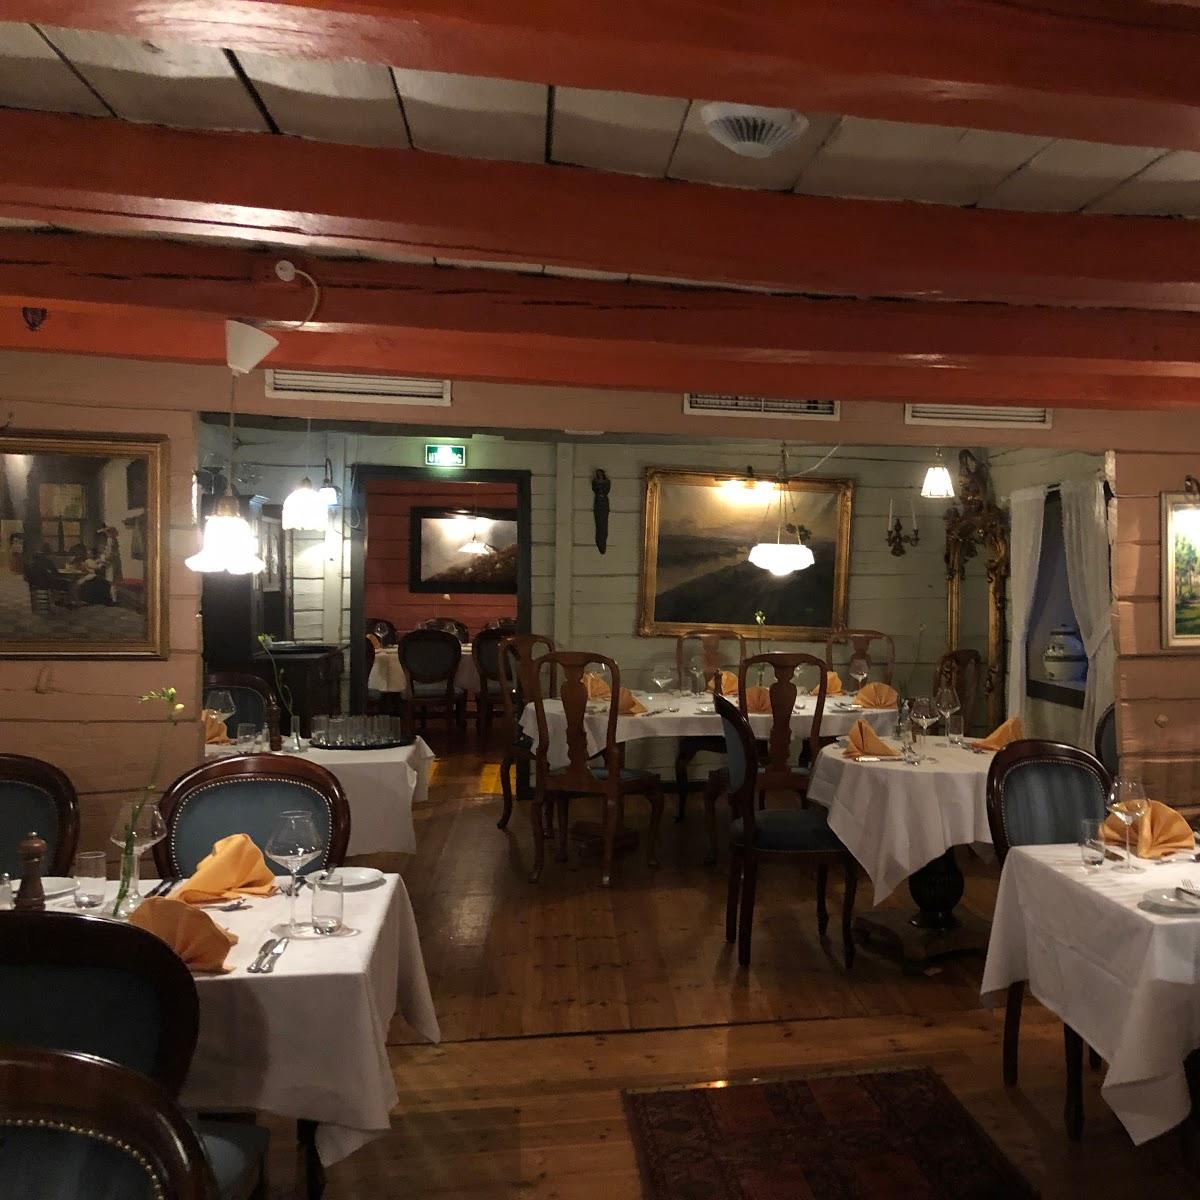 Restaurant "To Kokker" in Bergen